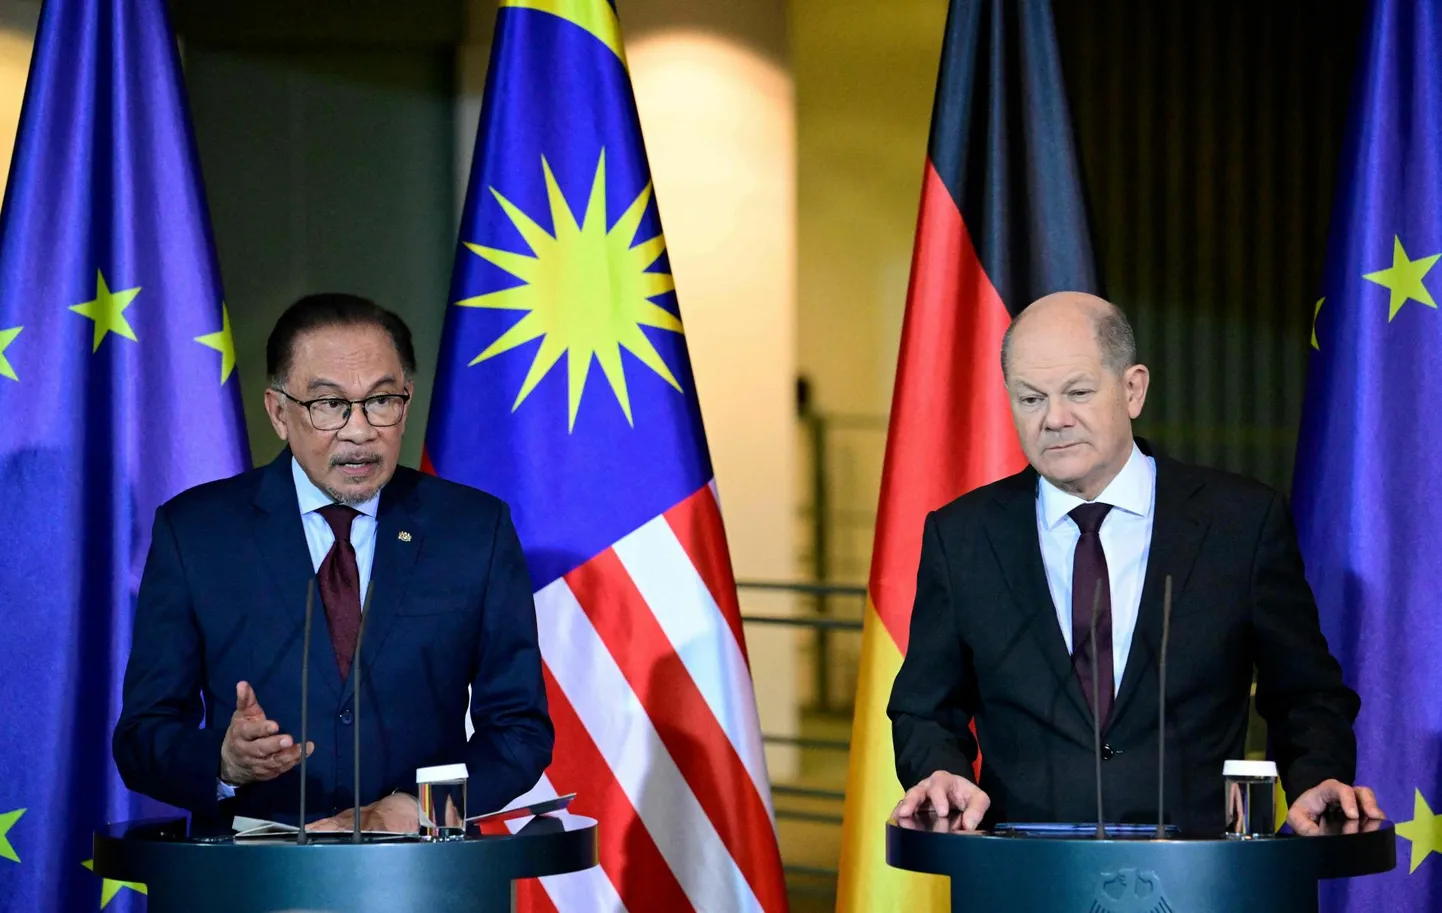 Malaisia peaminister Anwar Ibrahim ja Saksa kantsler Olaf Scholz pressikonverentsil Berliinis.